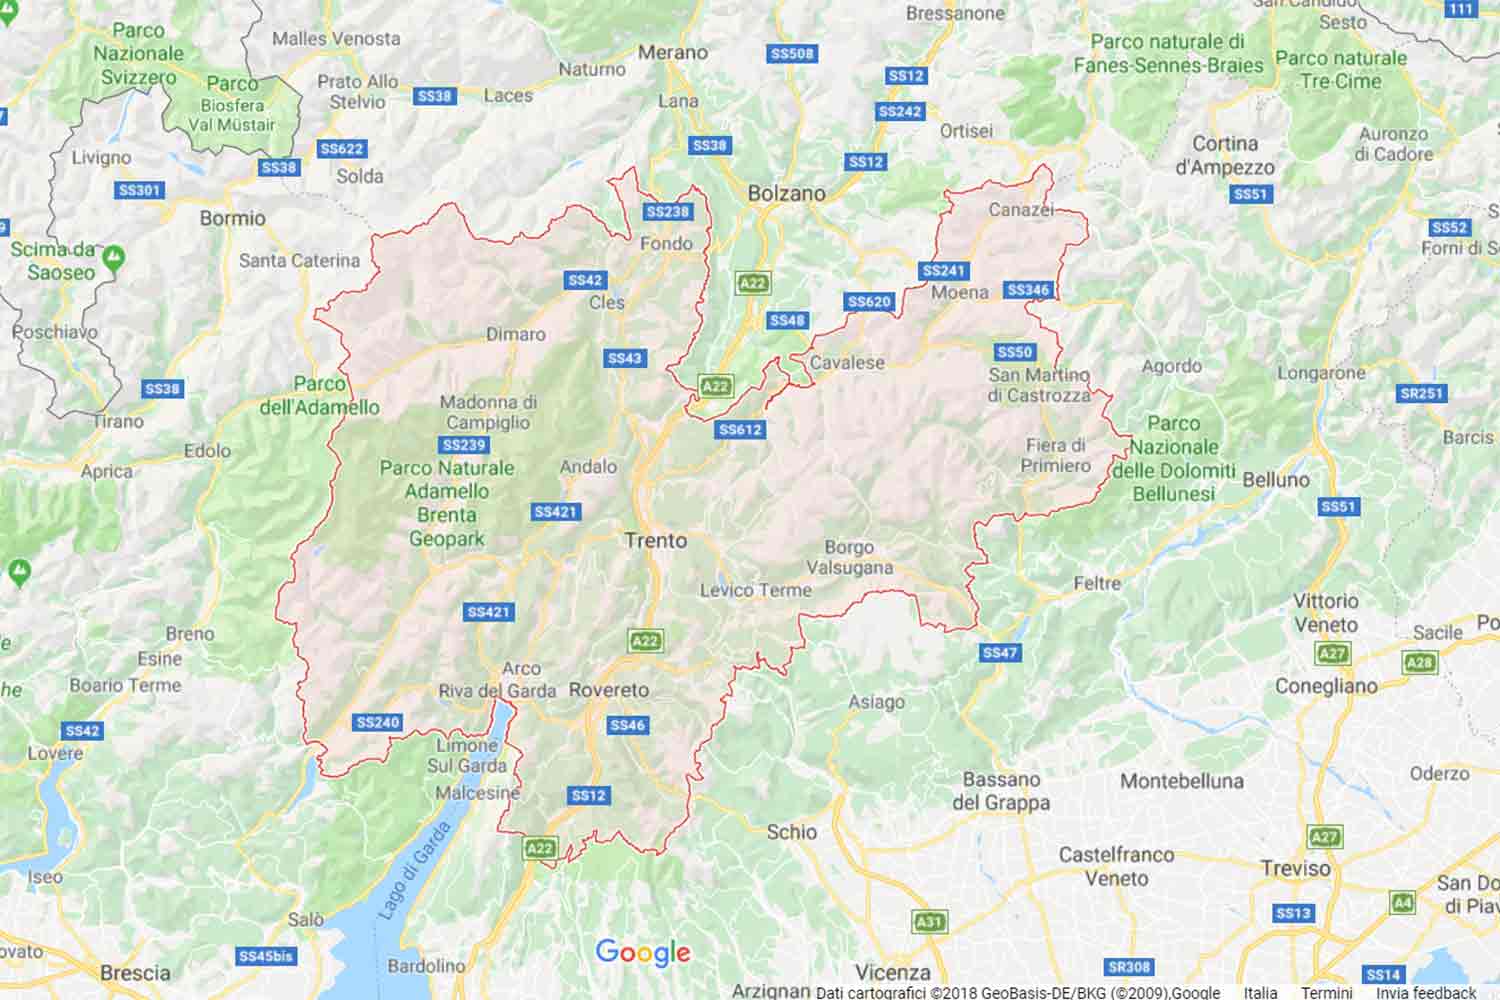 Trentino - Trento - Roverè della Luna Preventivi Veloci google maps